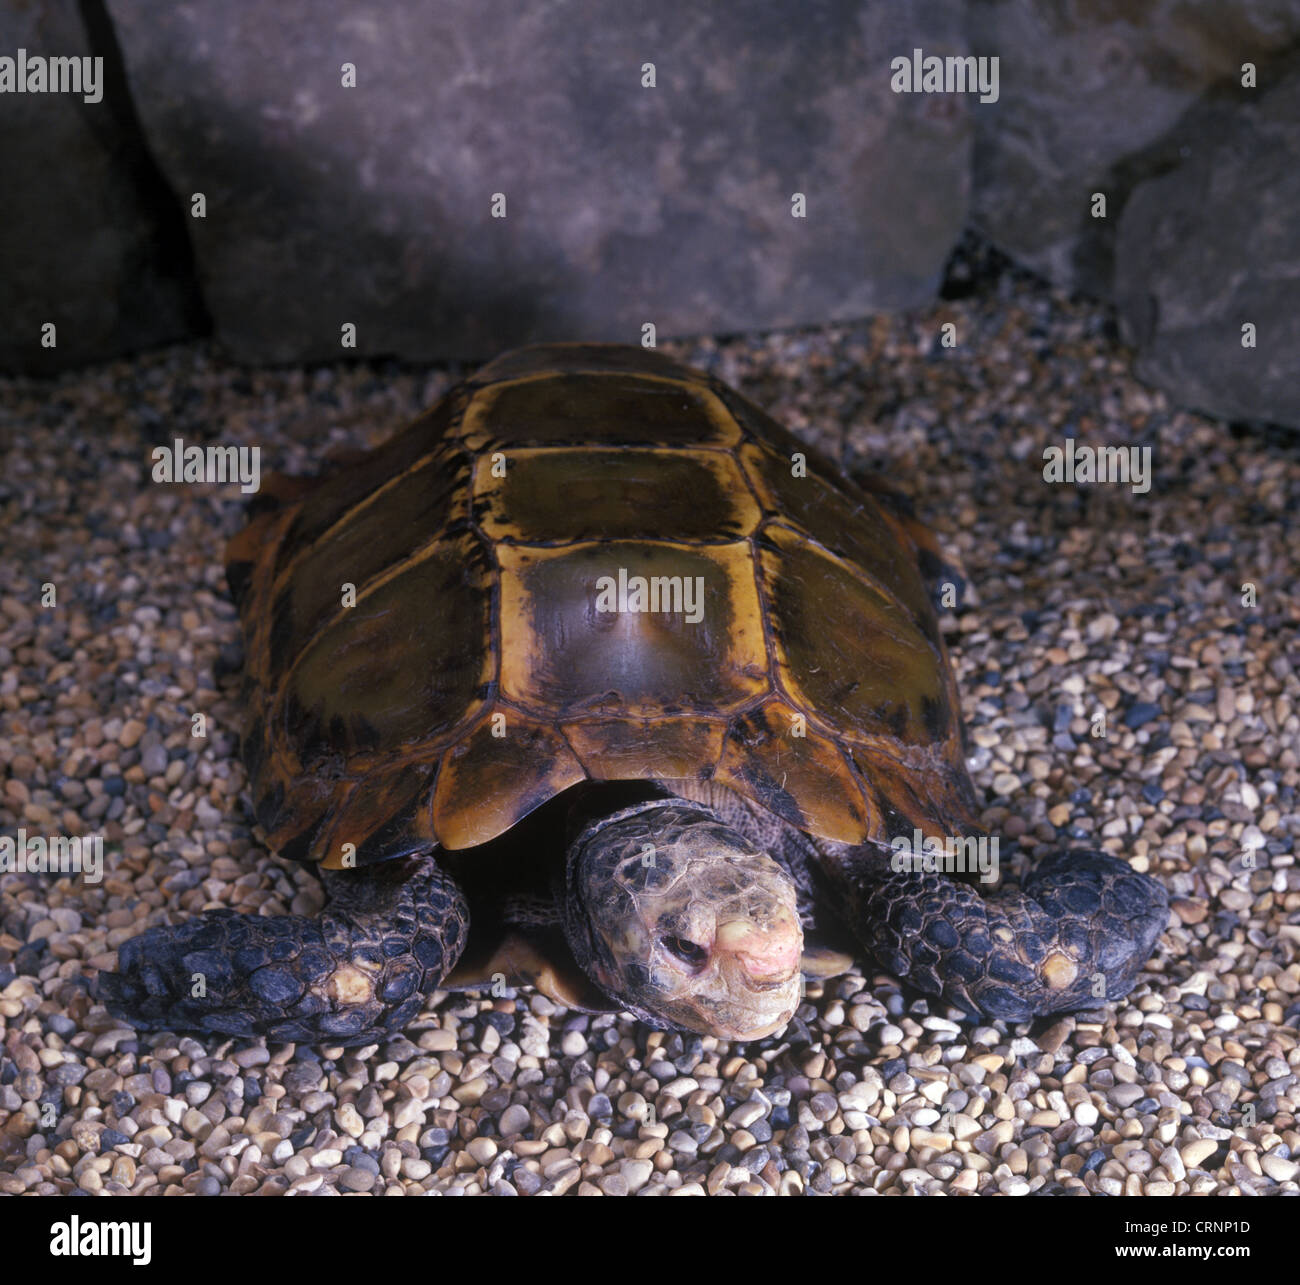 Tartaruga birmani - marrone (Geochelone emys) Close-up / sulle pietre Foto Stock